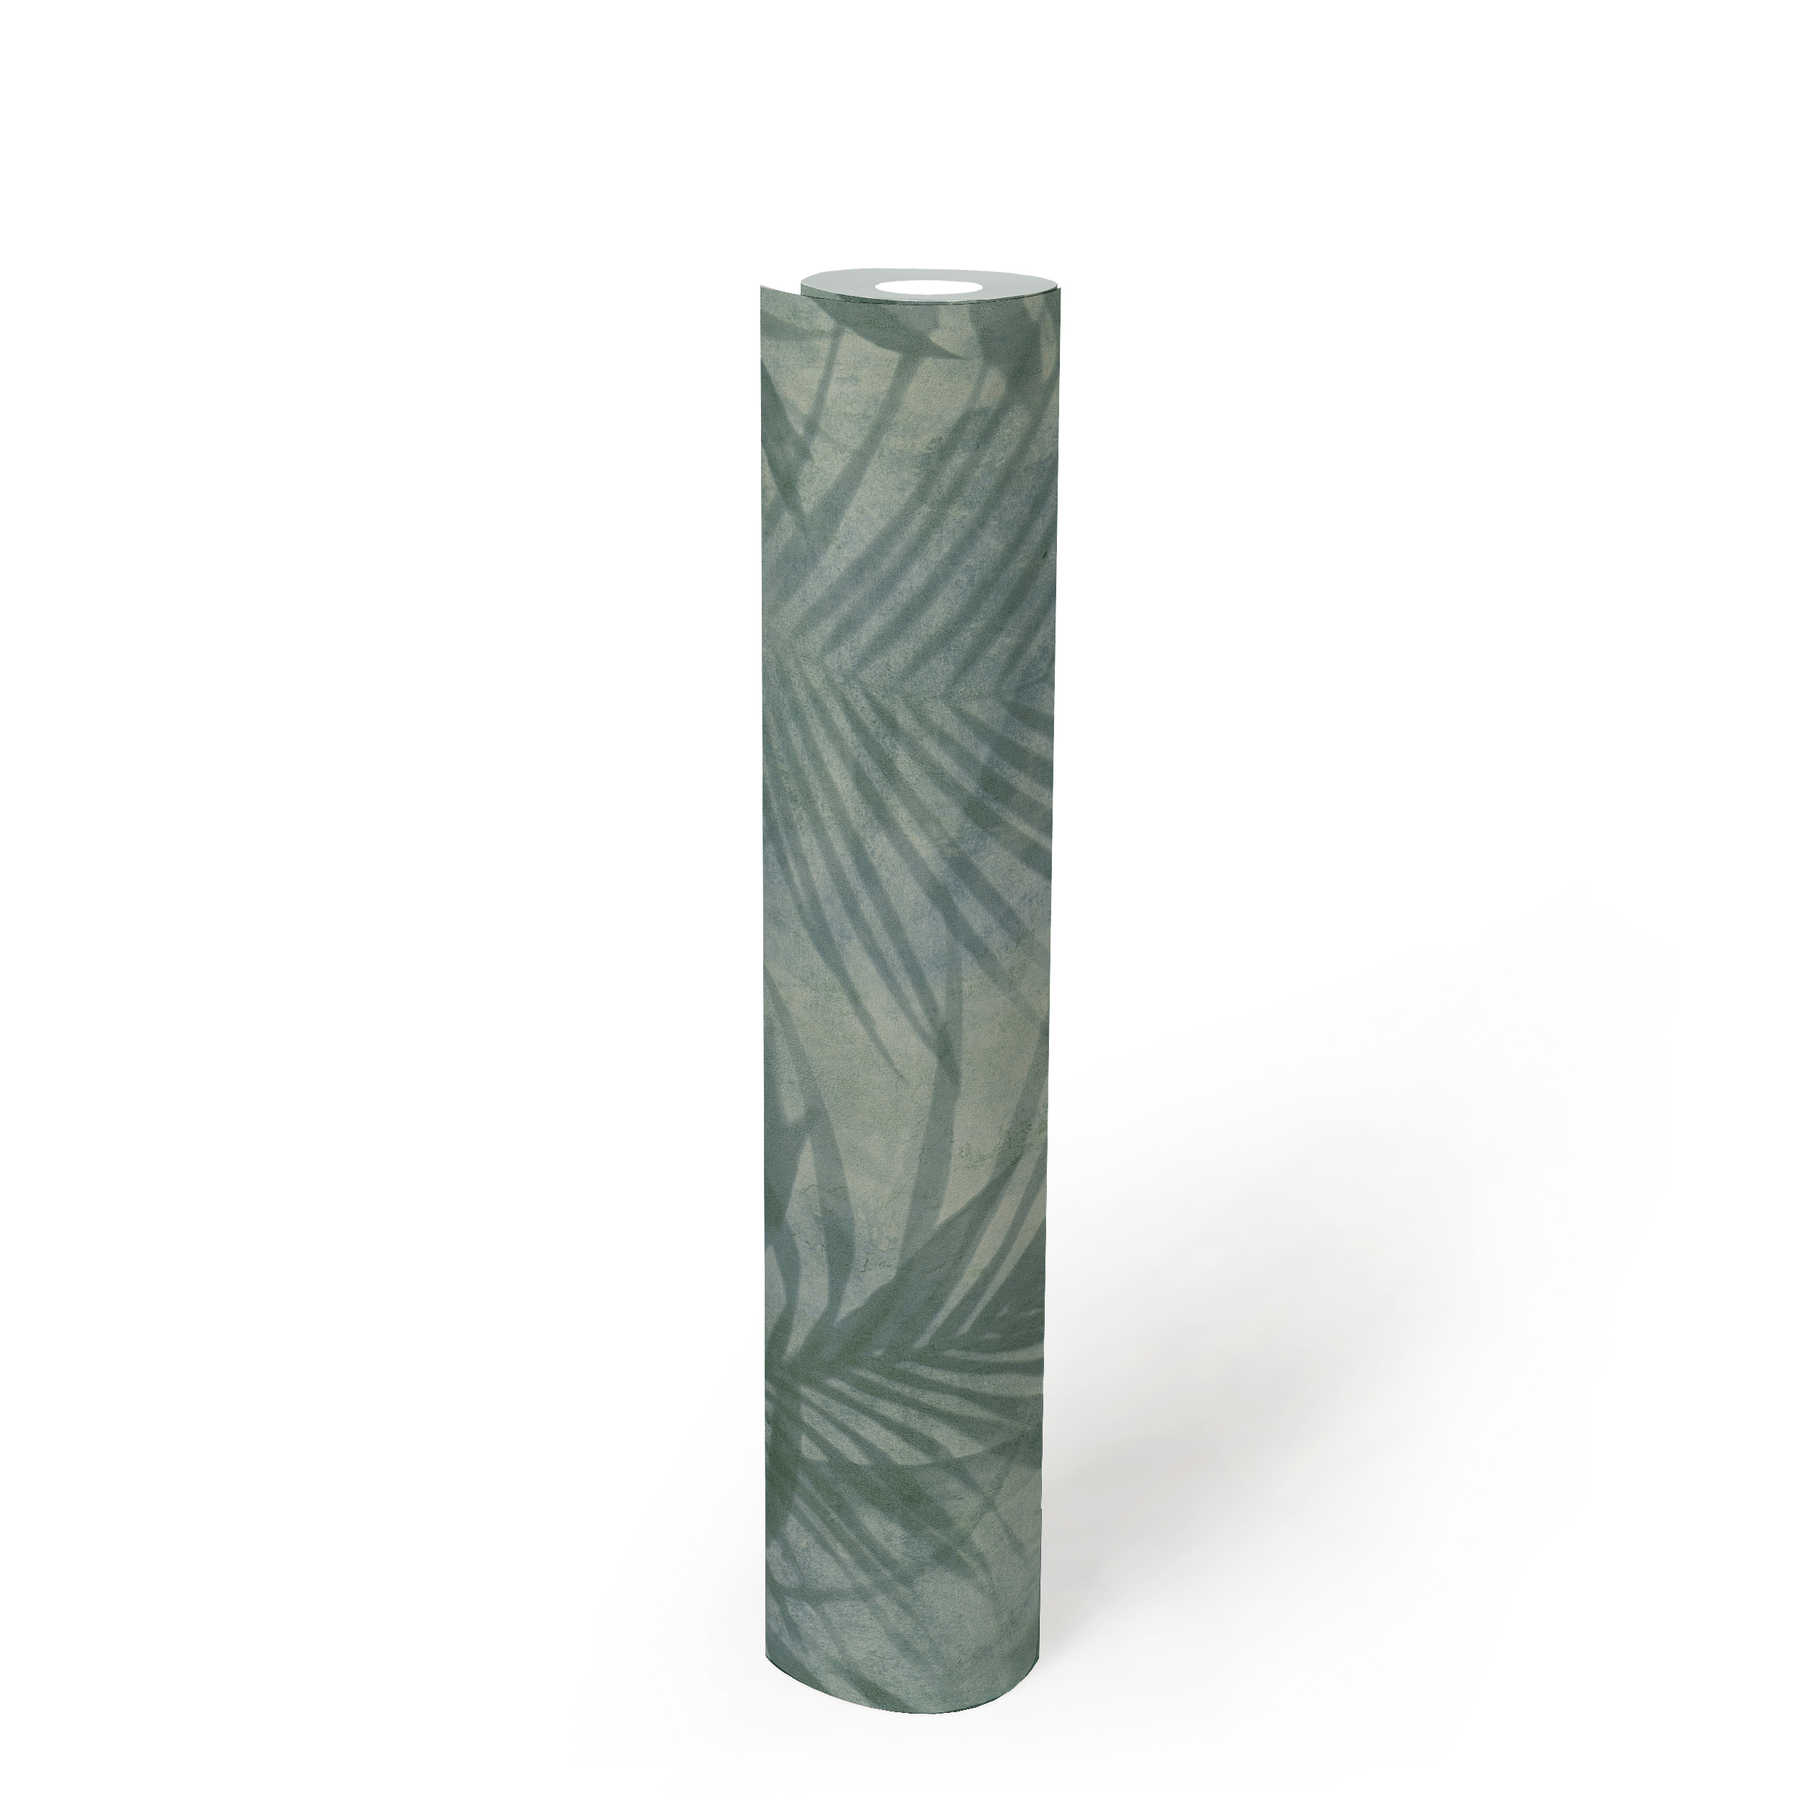             behang palmboom patroon in linnen look - groen, blauw, grijs
        